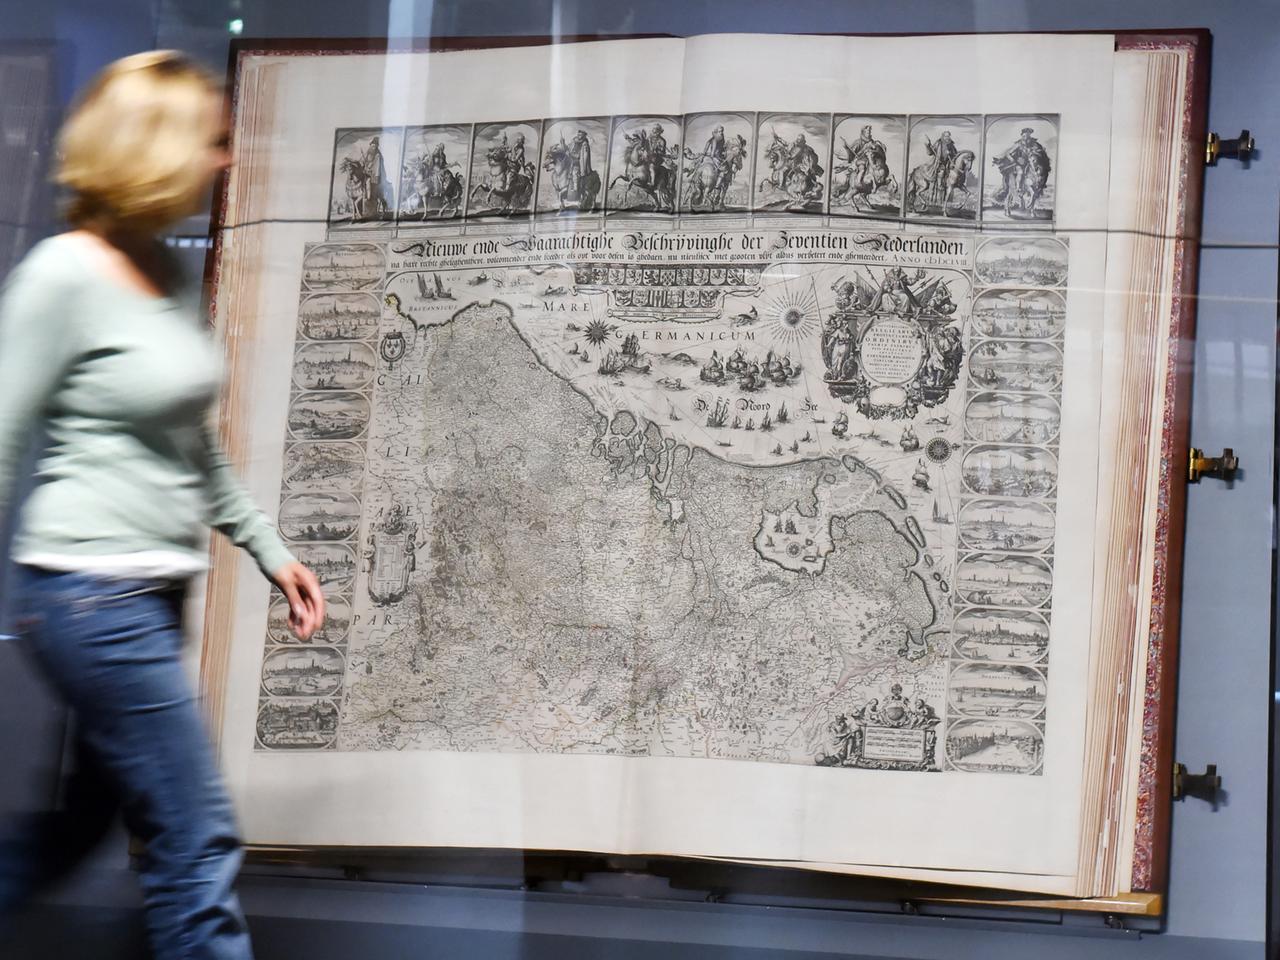 Der Johannes Klencke Atlas in der Ausstellung "Mapping Spaces" hinter Glas. Er ist um 1660 entstanden.